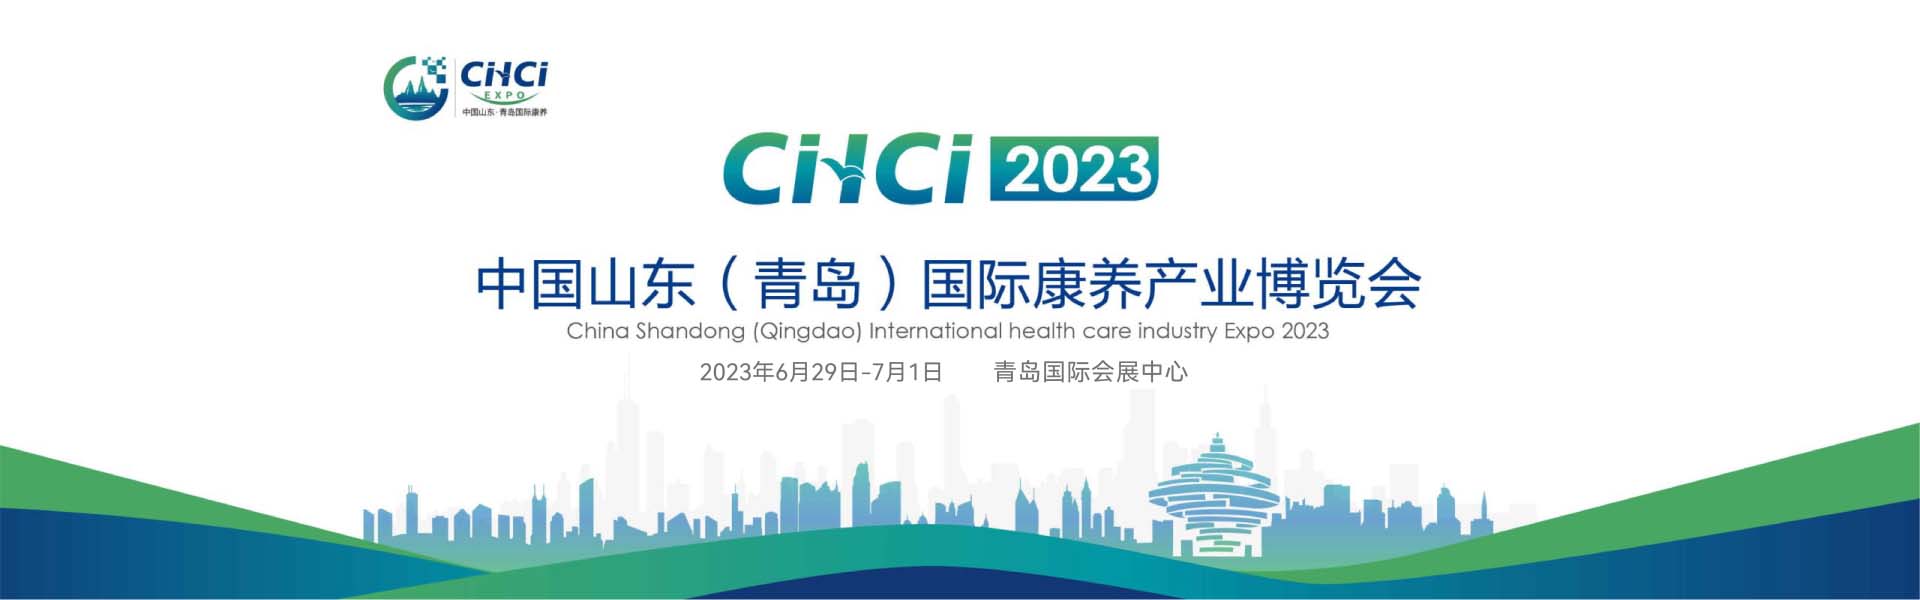 中国山东(青岛)国际康养产业博览会 2023年